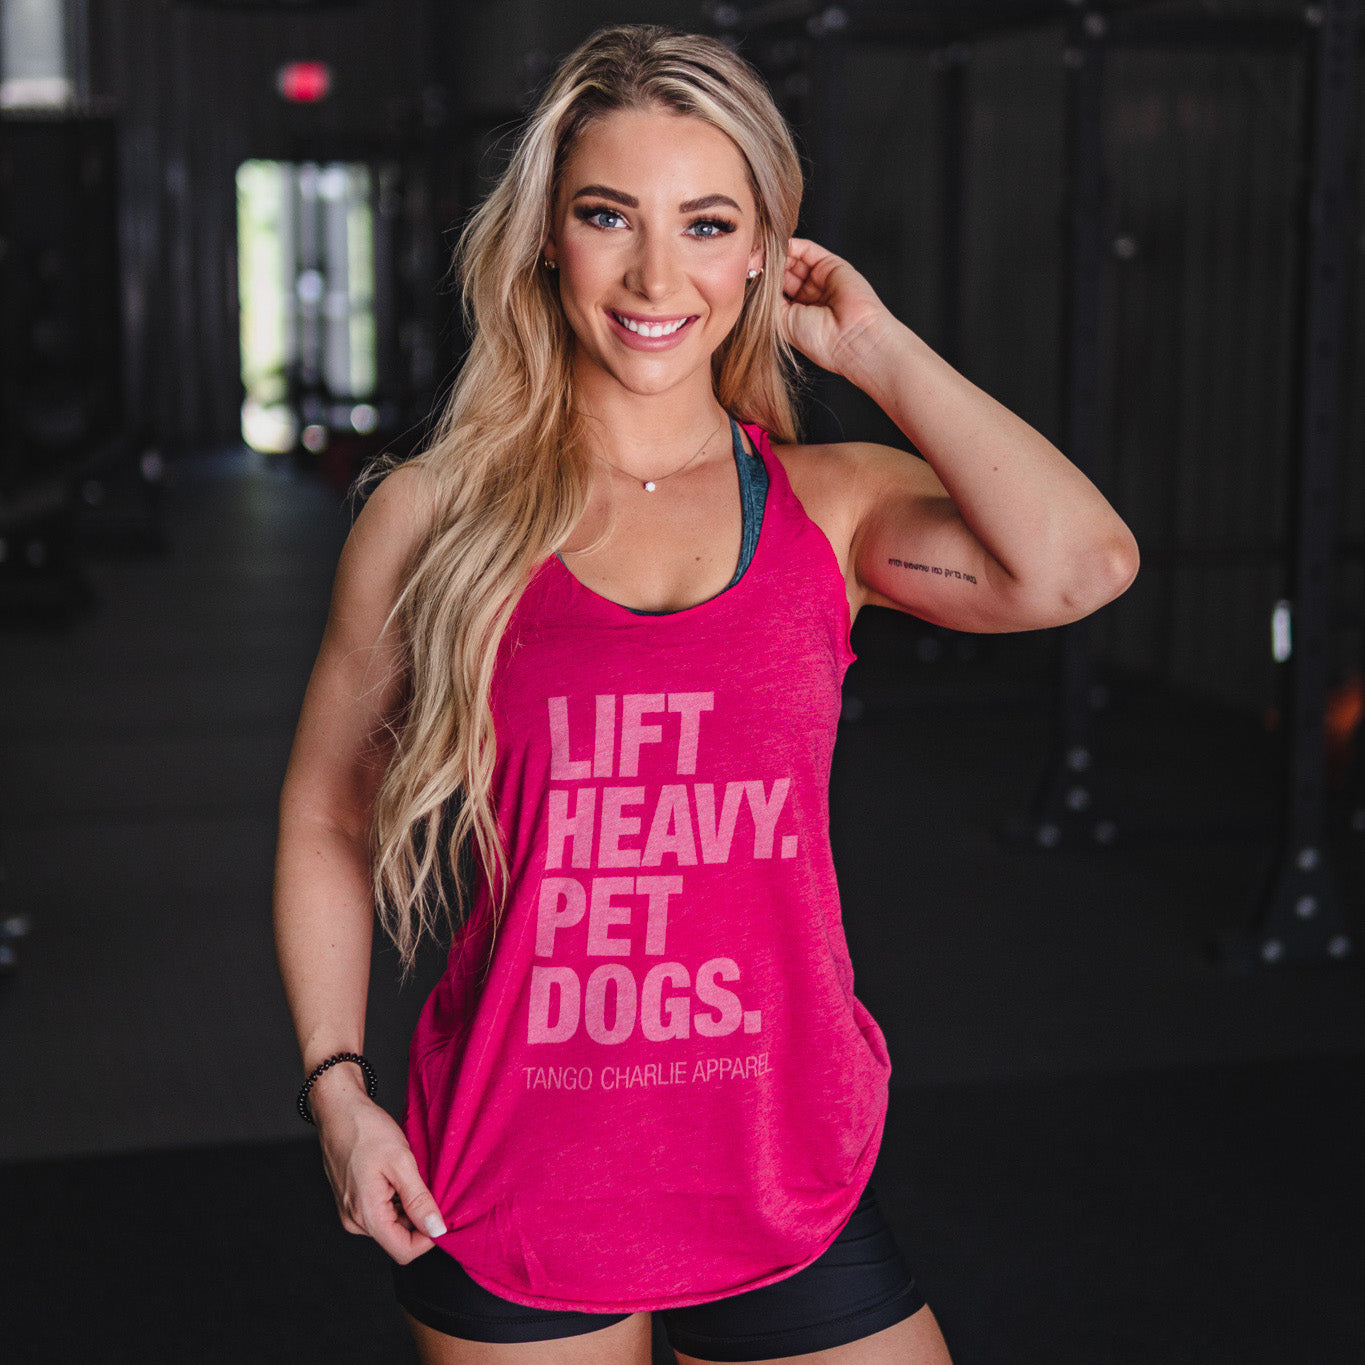 Lift Heavy. Pet Dogs. - Women's Tank